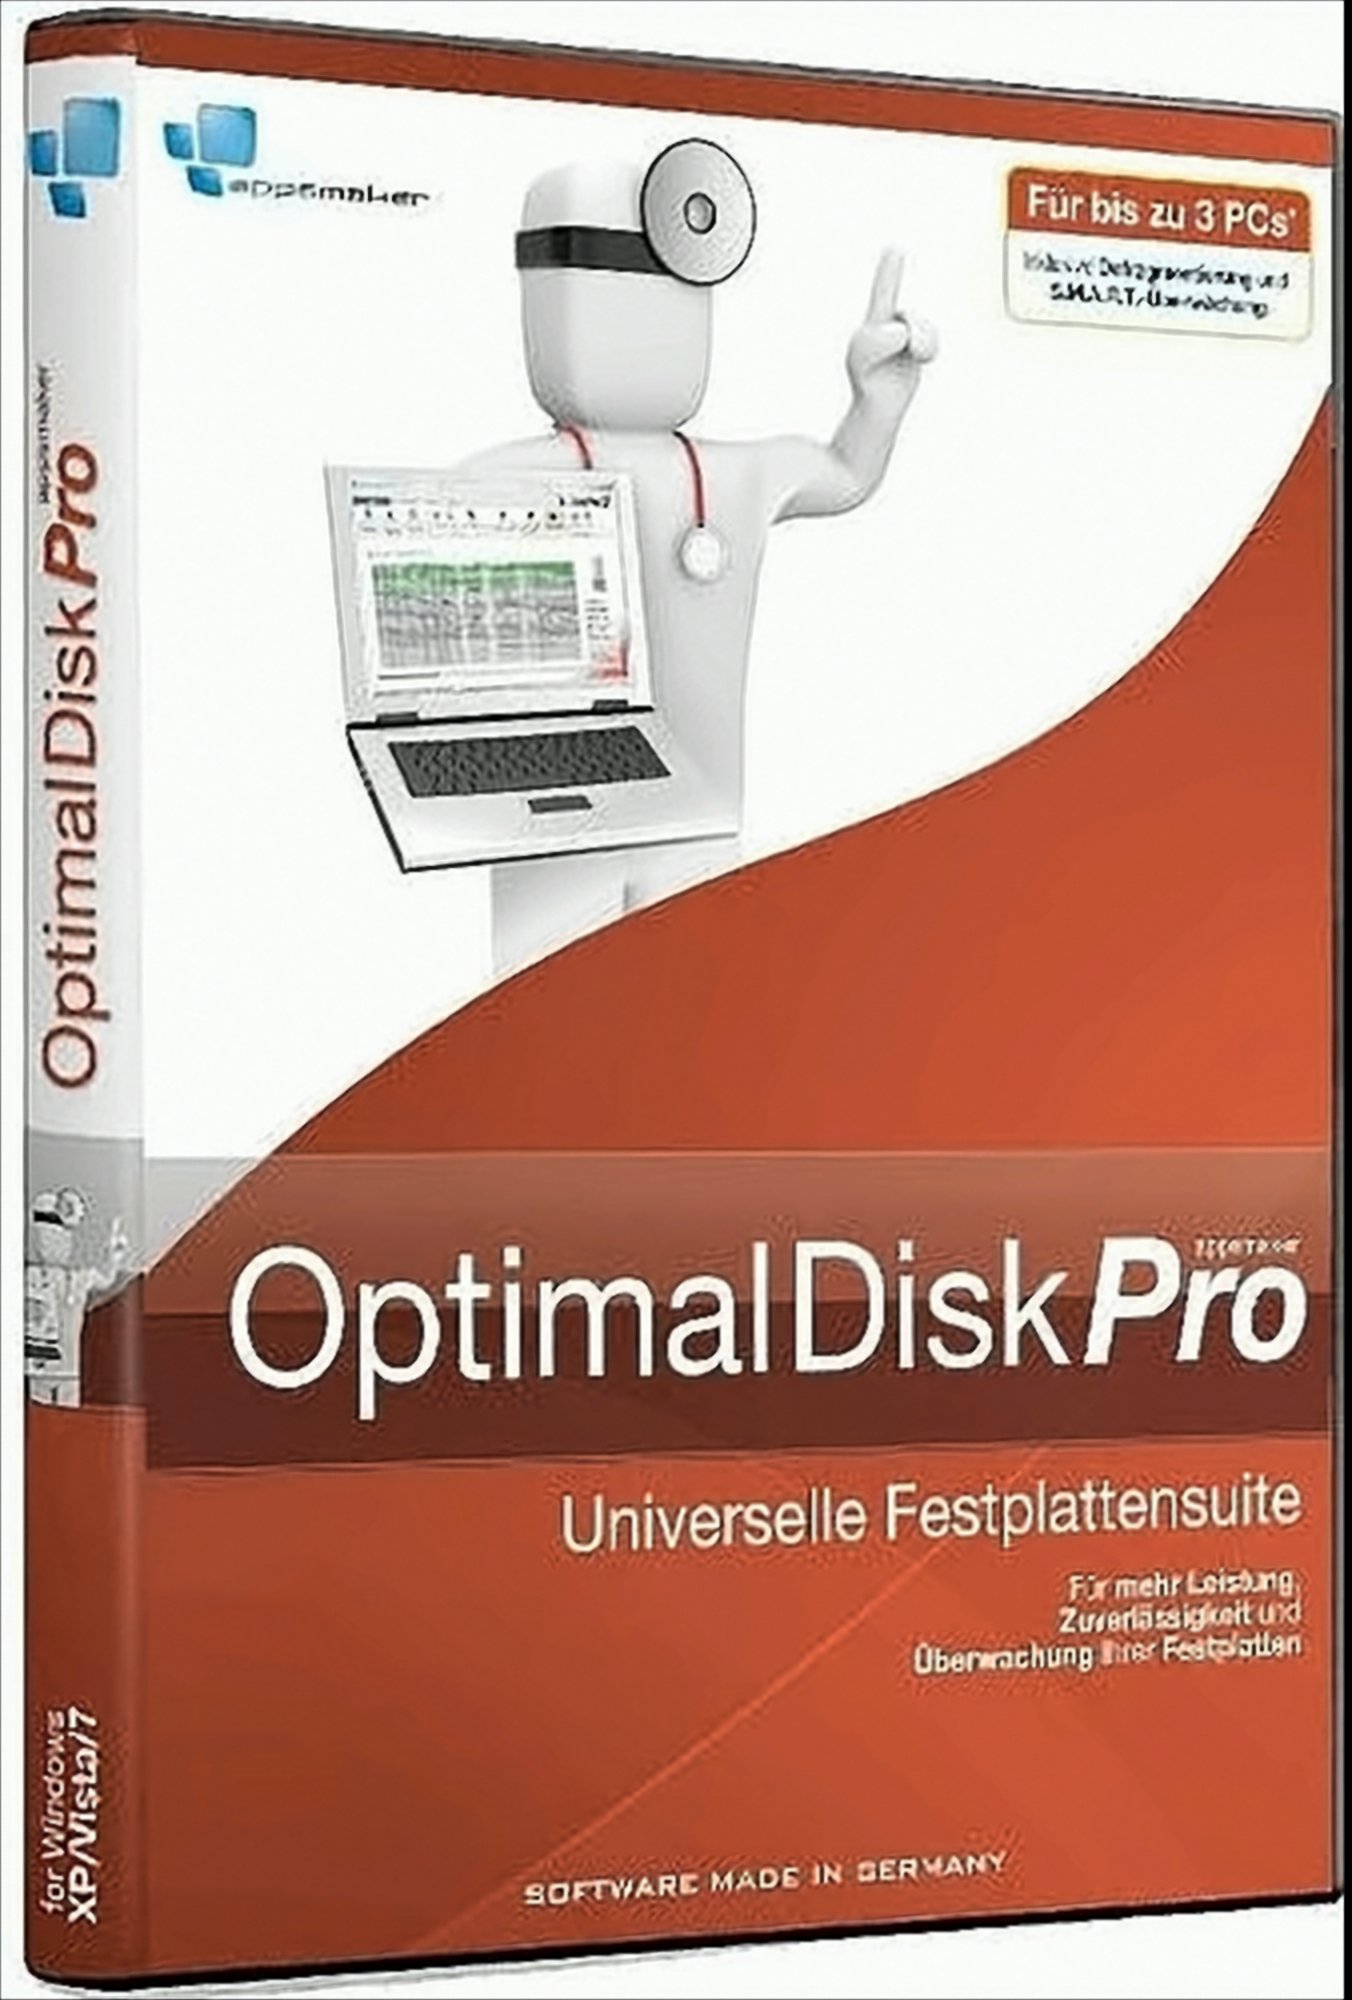 OptimalDiskPro von appsmaker